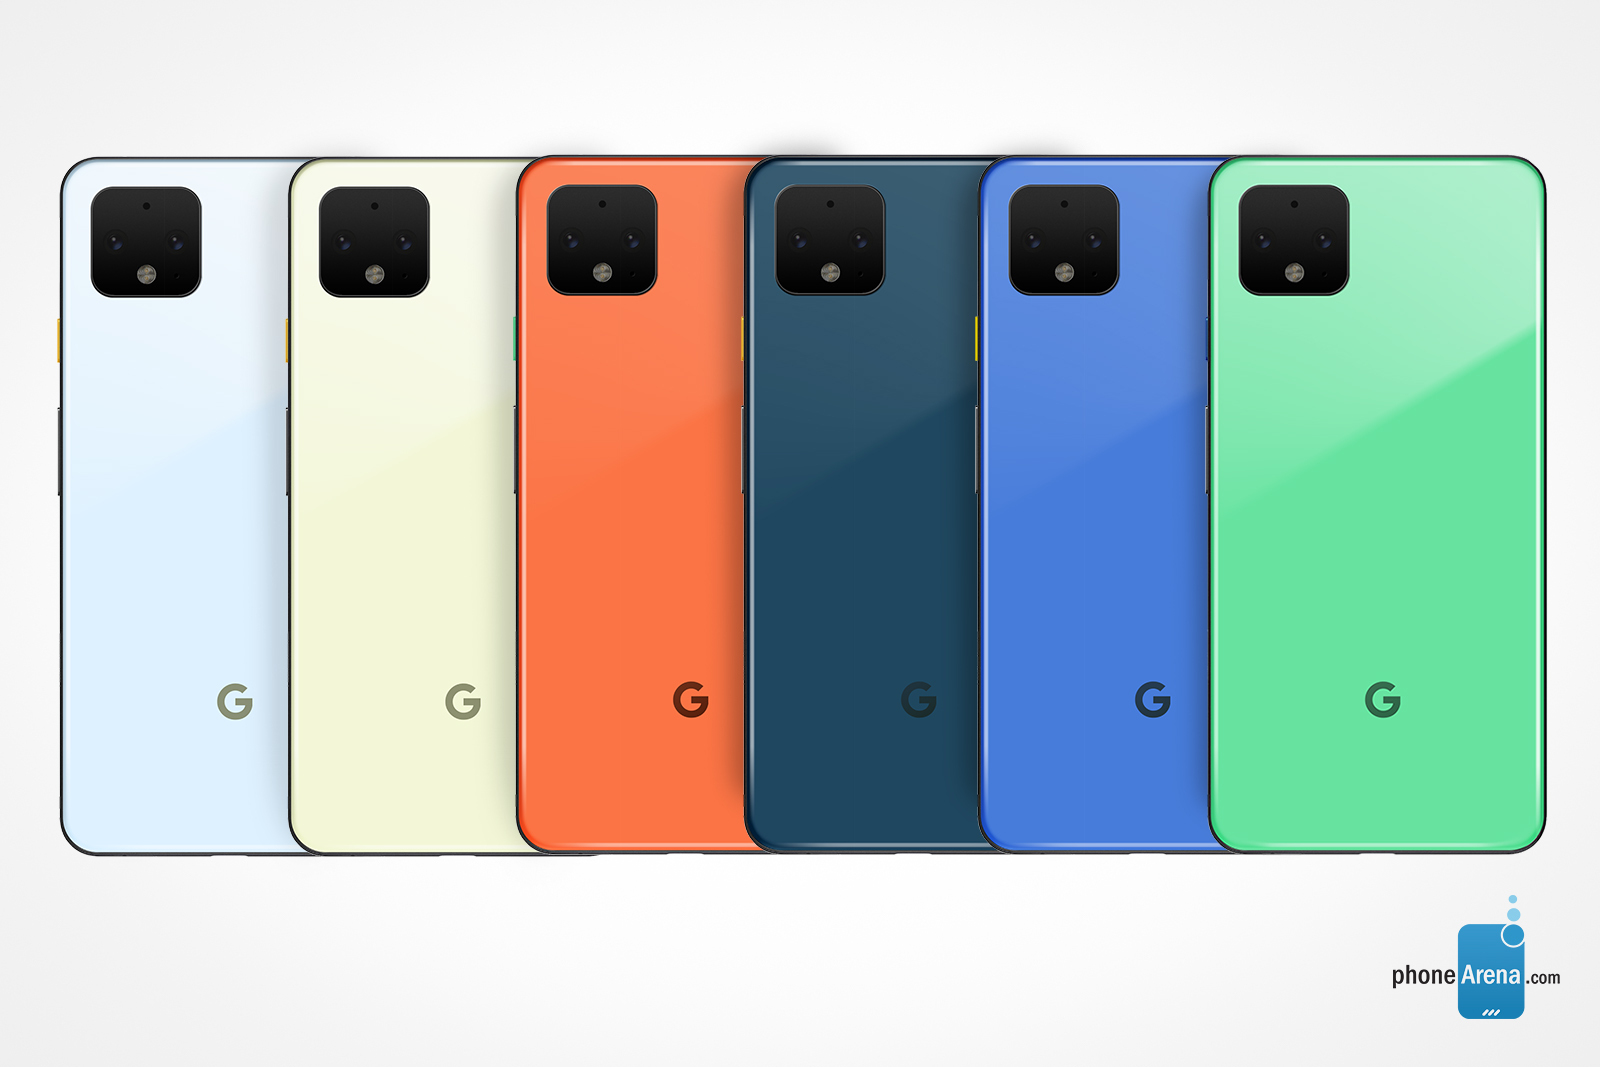 Google Pixel 4-designkoncept på Androdid Green, Blue, Dark Blue, Orange, Chartreuse och Pattens Blue - Nya Pixel 4-färgval baserade på uppdateringspaletten Android 10 som kan tänkas i konceptet